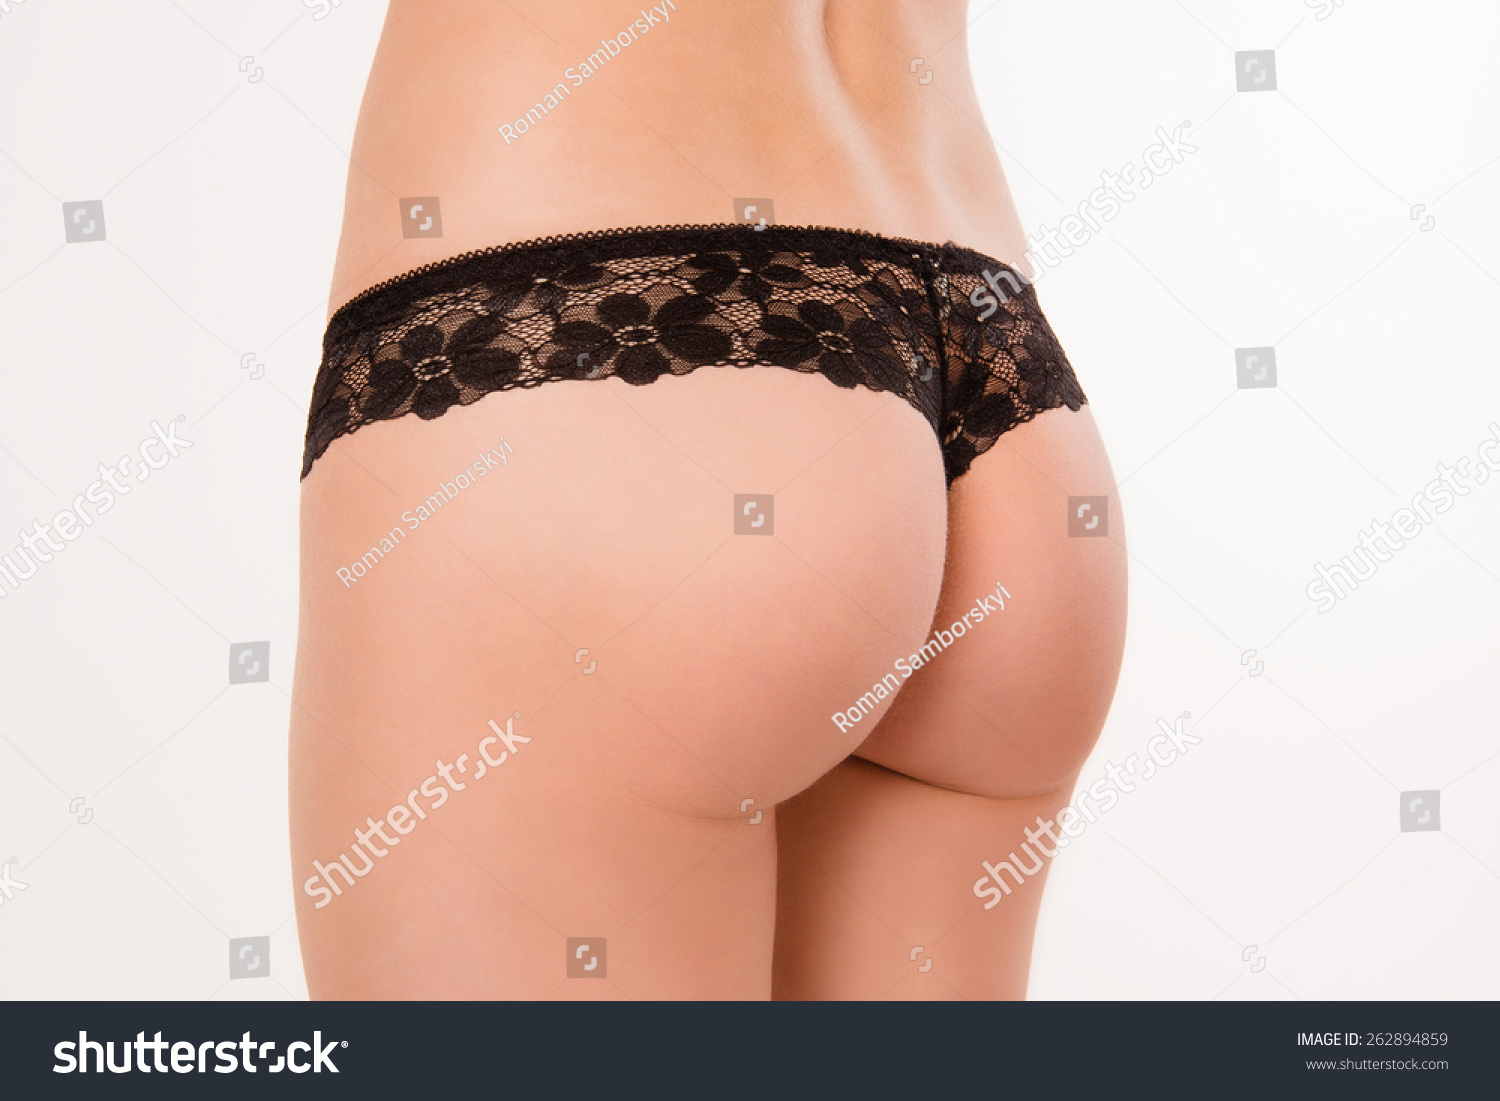 Nice Ass Ass